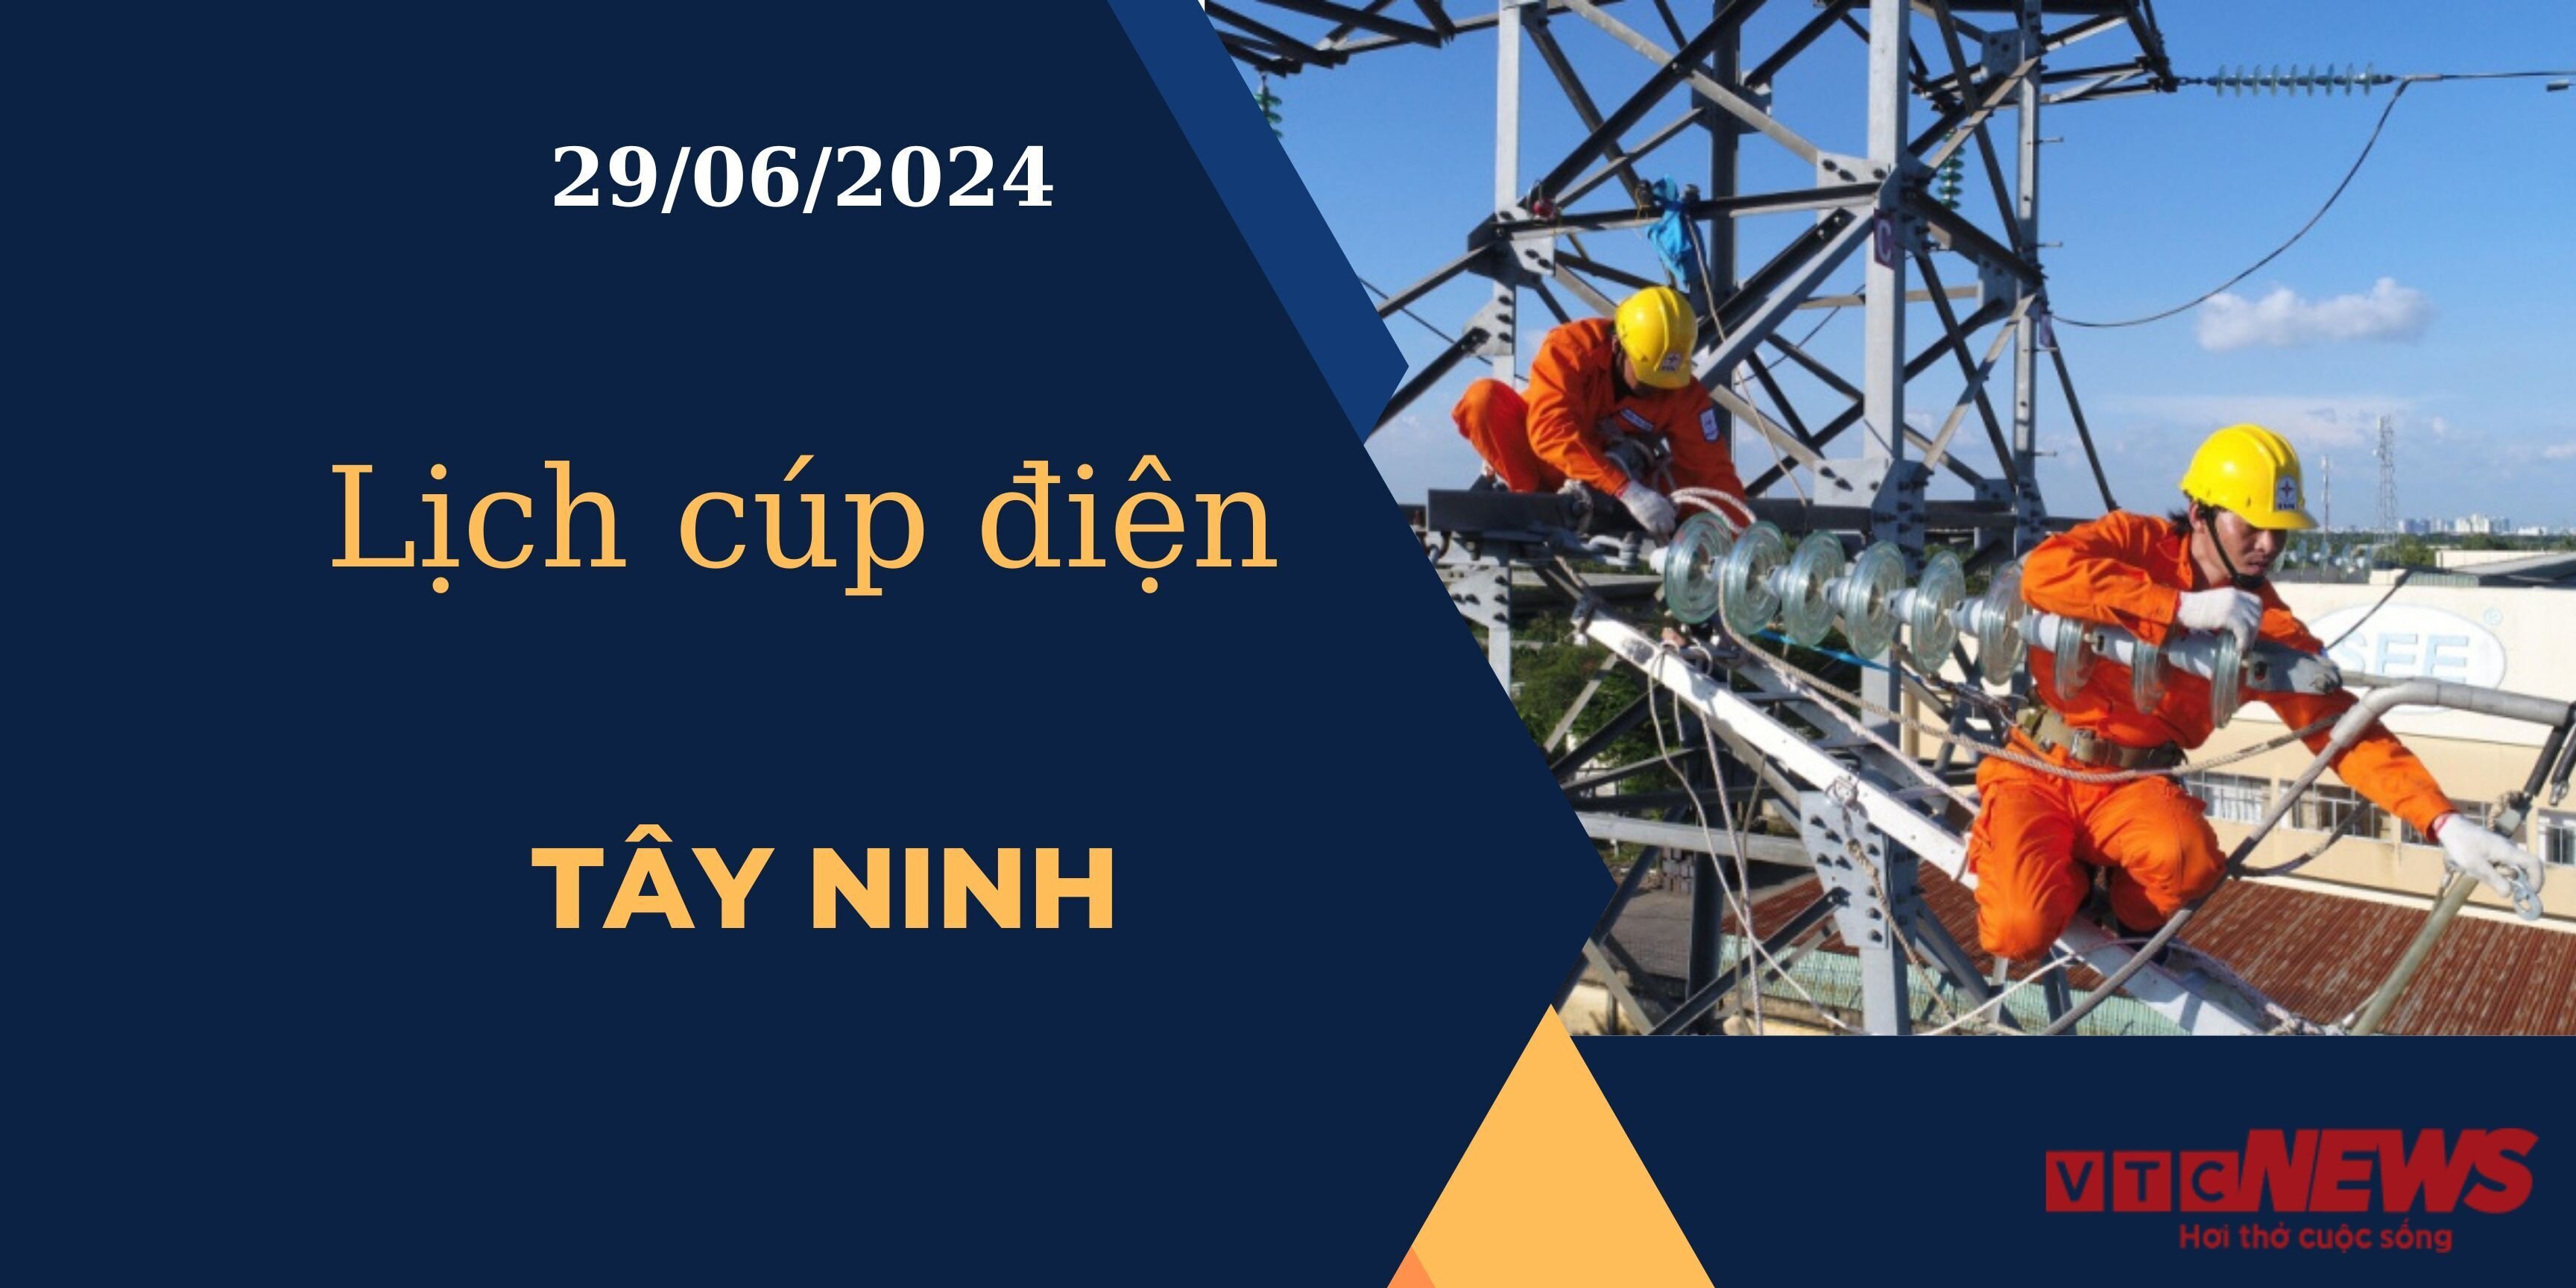 Lịch cúp điện hôm nay ngày 29/06/2024 tại Tây Ninh